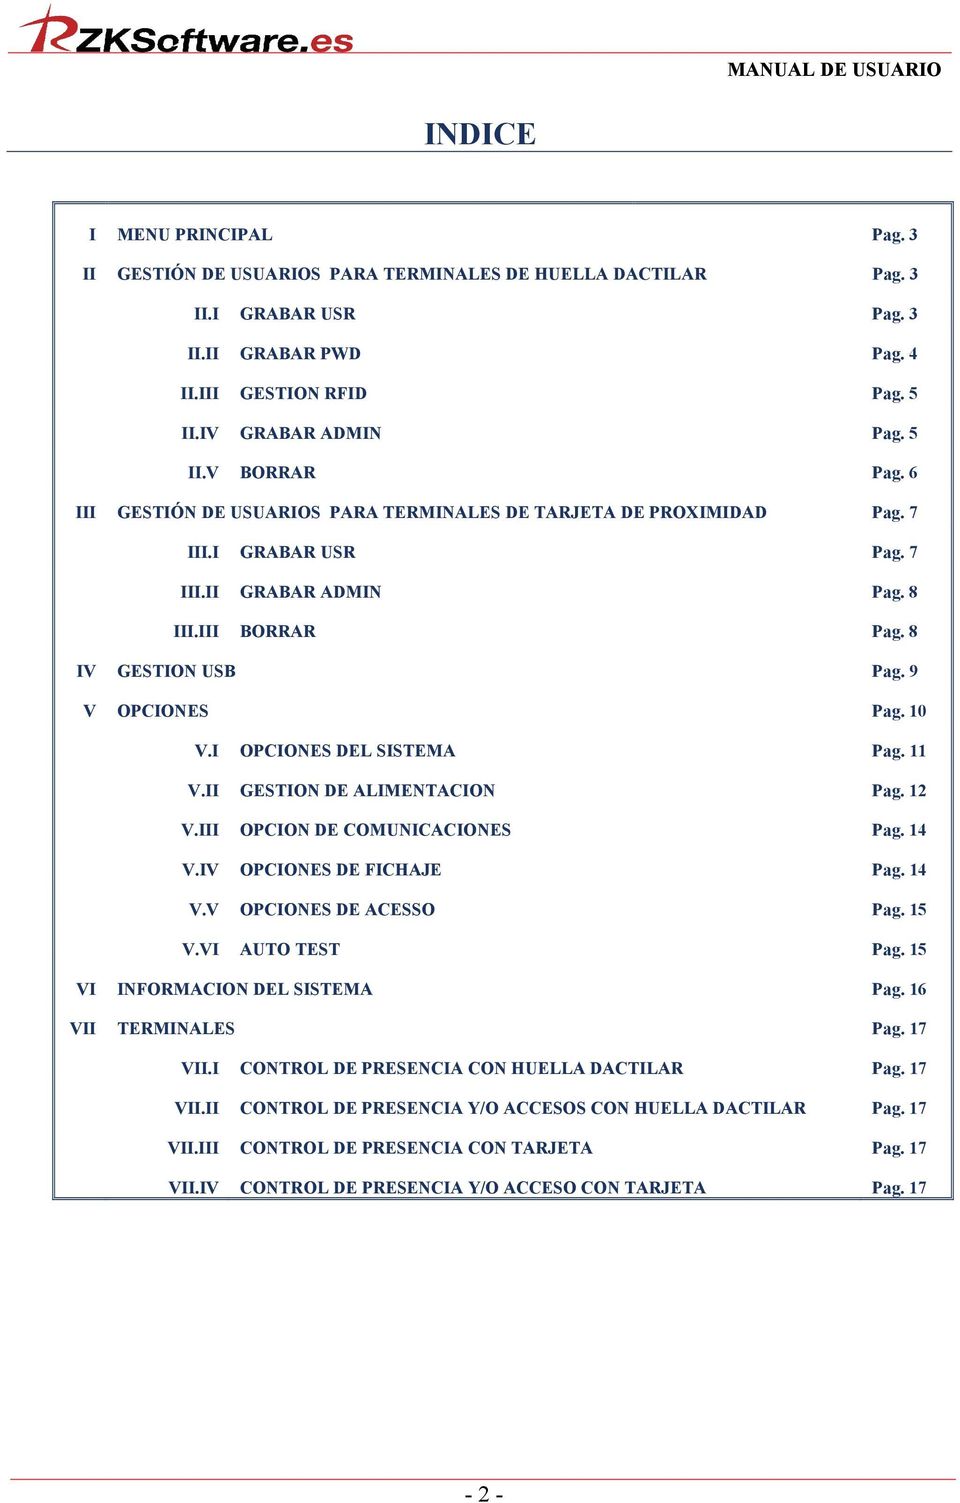 I OPCIONES DEL SISTEMA Pag. 11 V.II GESTION DE ALIMENTACION Pag. 12 V.III OPCION DE COMUNICACIONES Pag. 14 V.IV OPCIONES DE FICHAJE Pag. 14 V.V OPCIONES DE ACESSO Pag. 15 V.VI AUTO TEST Pag.